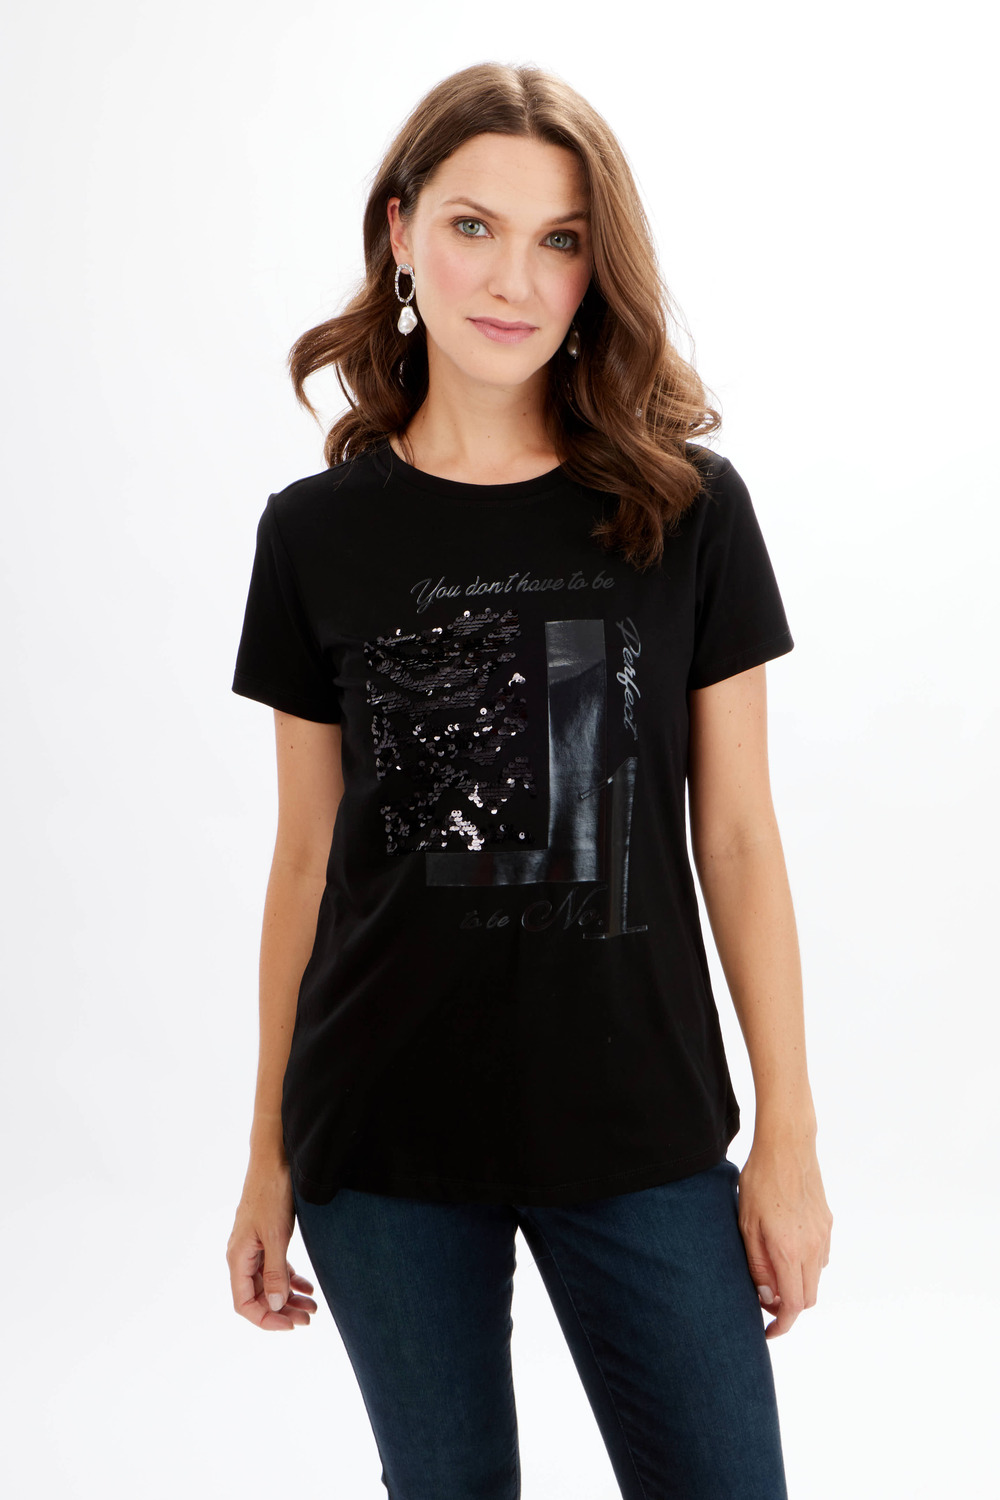 T-shirt monochrome à textures Modèle 714-02. Noir